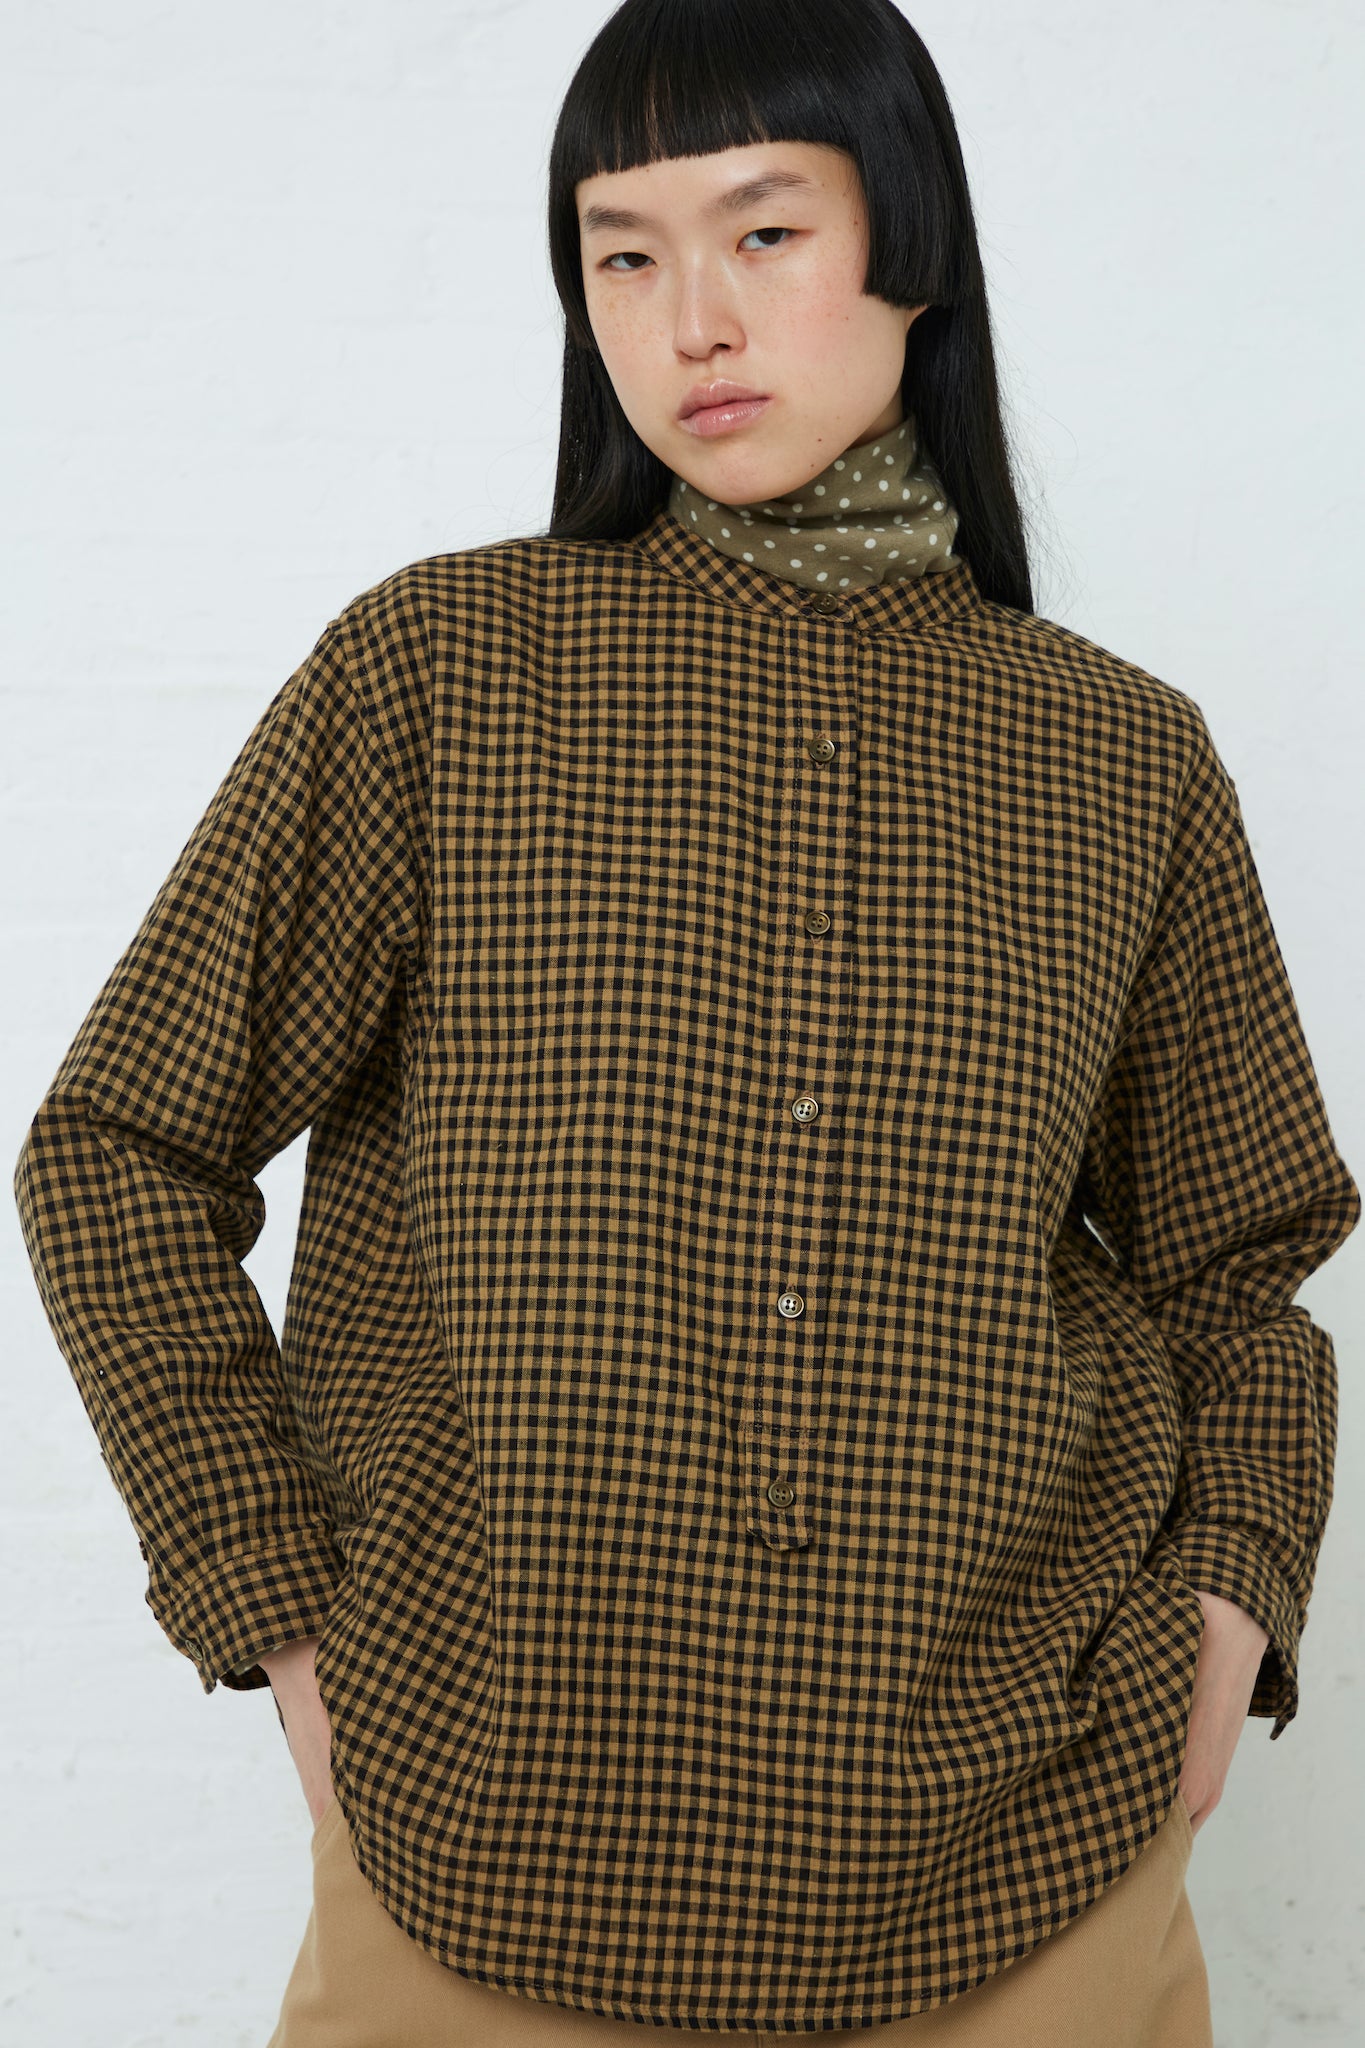 A model wearing an Ichi Cotton/Linen Gingham Shirt in Beige.